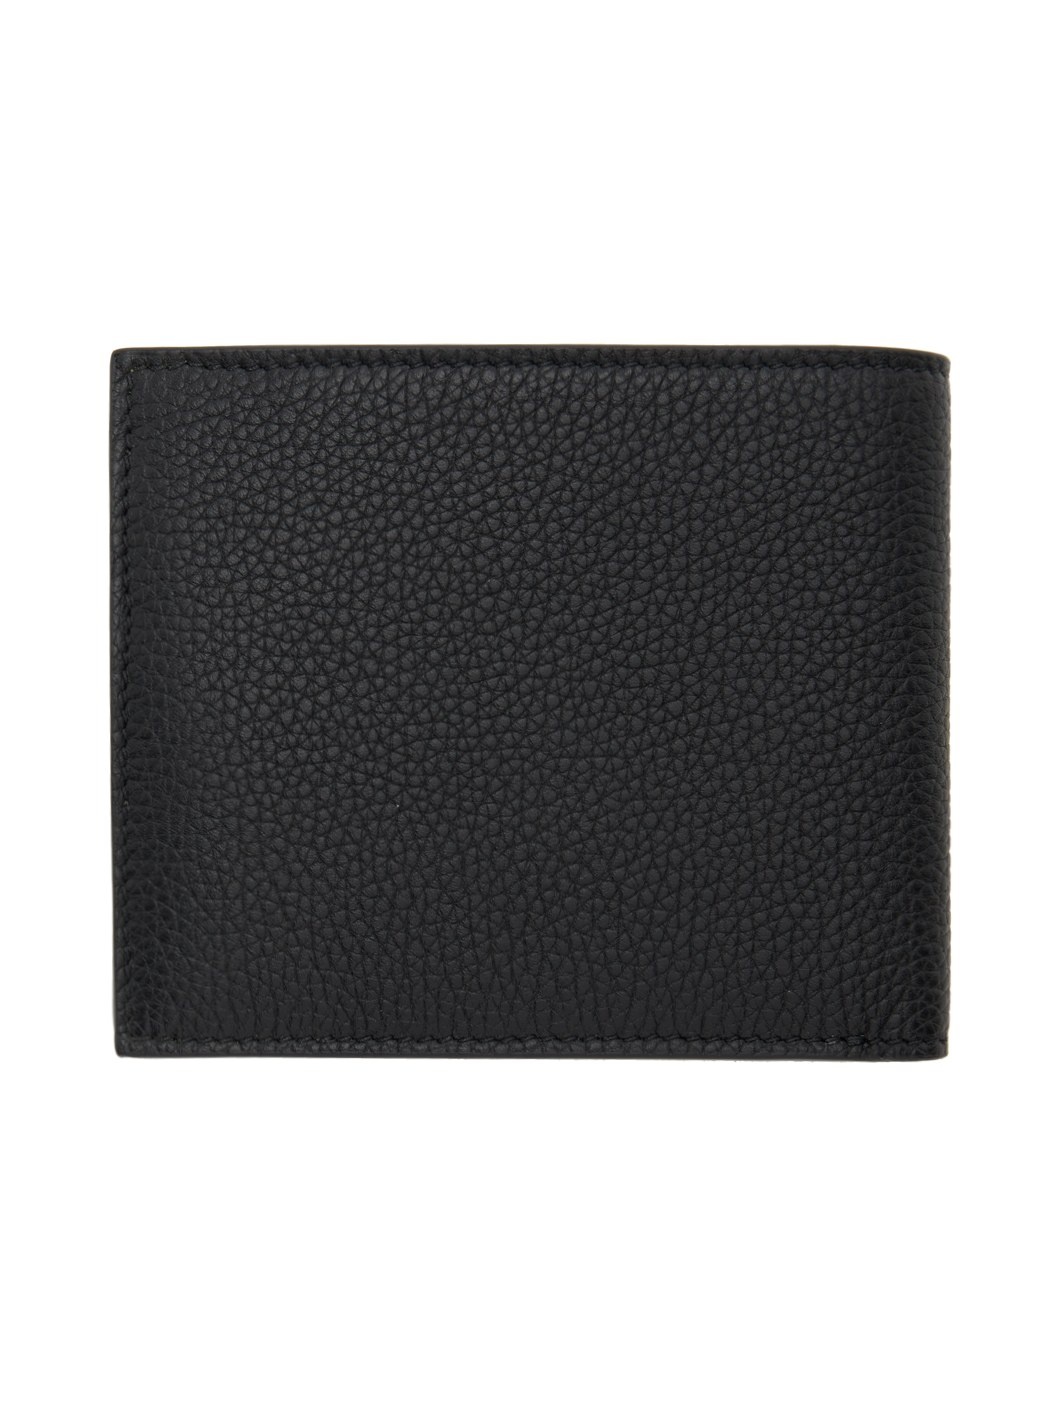 Black Grain Leather Bifold Wallet - 2